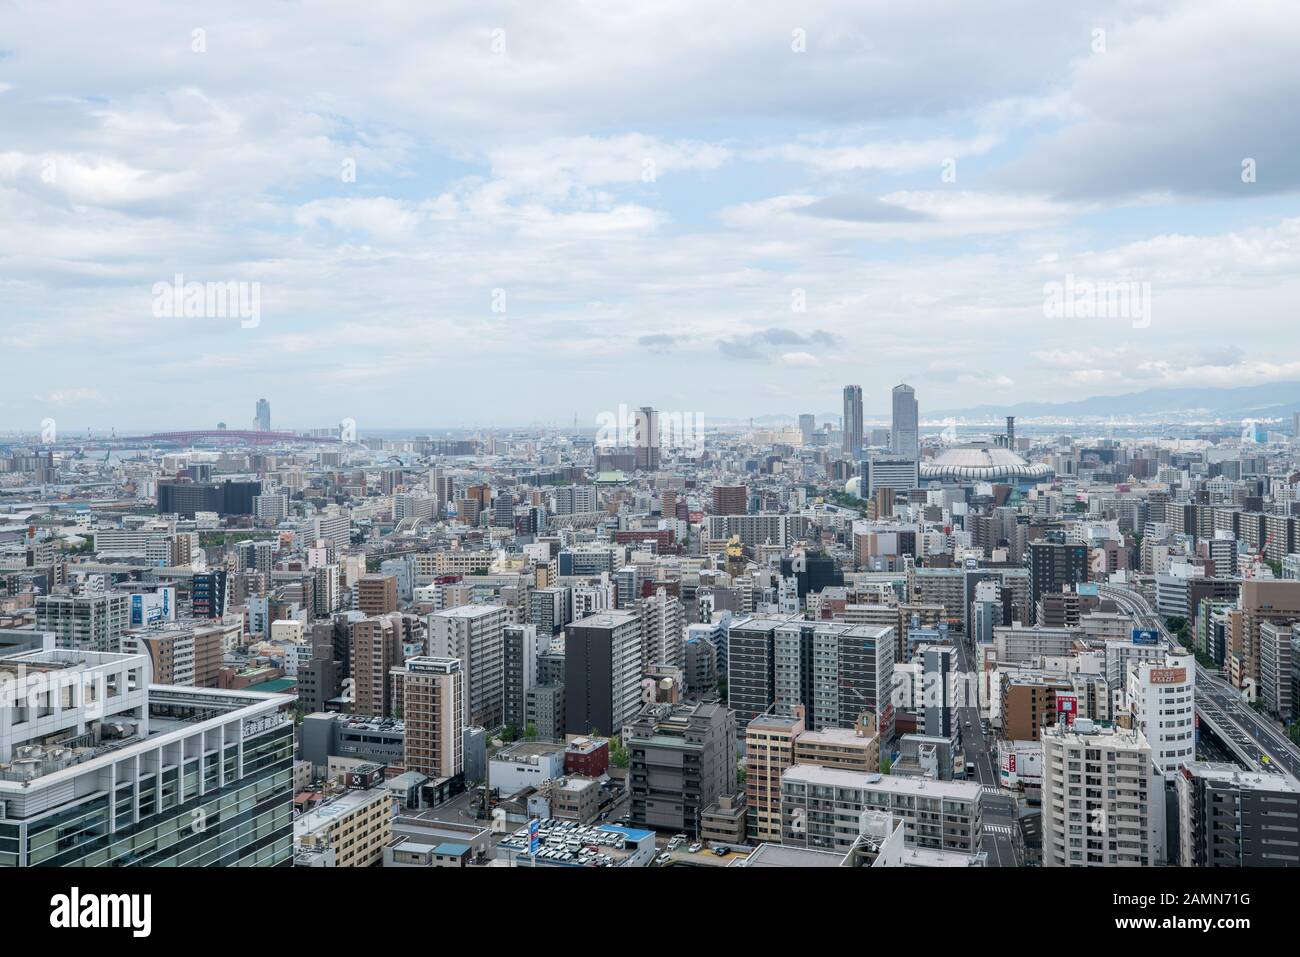 Villes de la ligne d'horizon à Osaka, Japon Banque D'Images